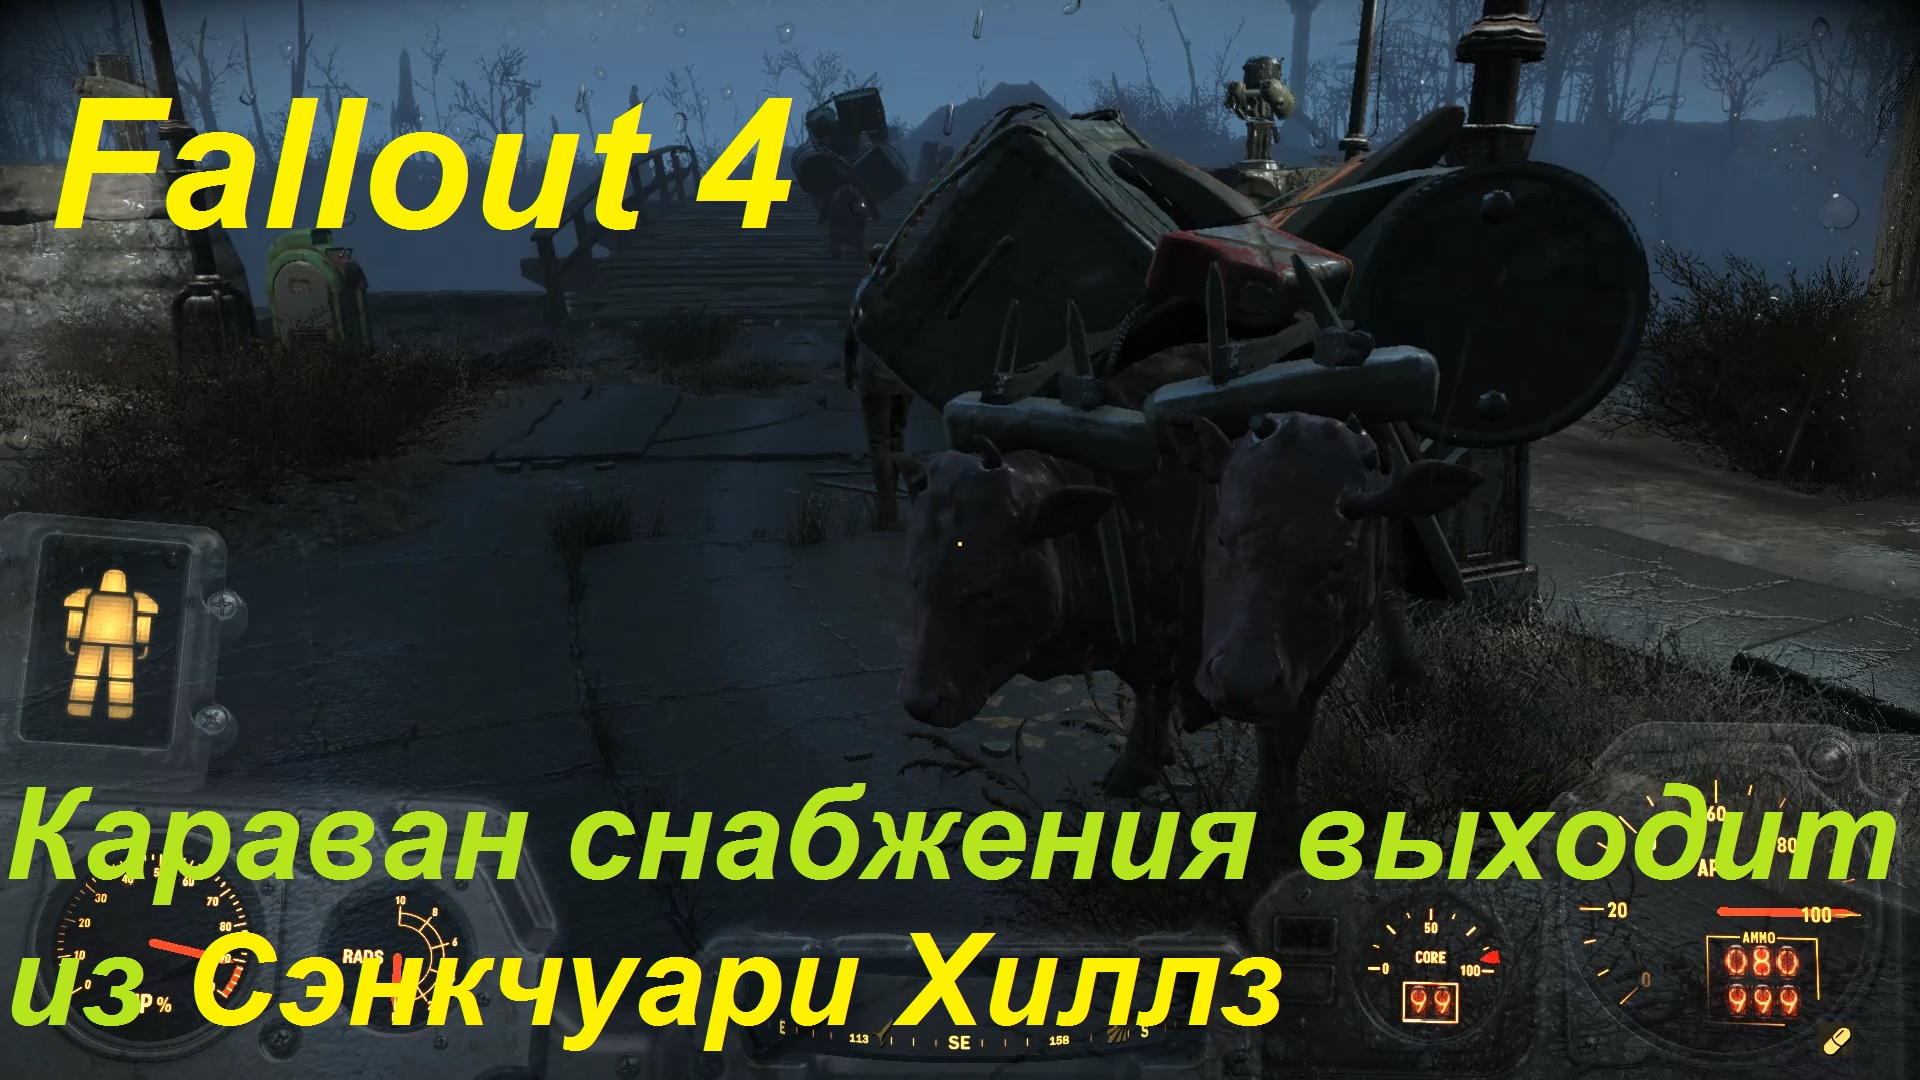 Fallout 4 собака в сэнкчуари фото 109